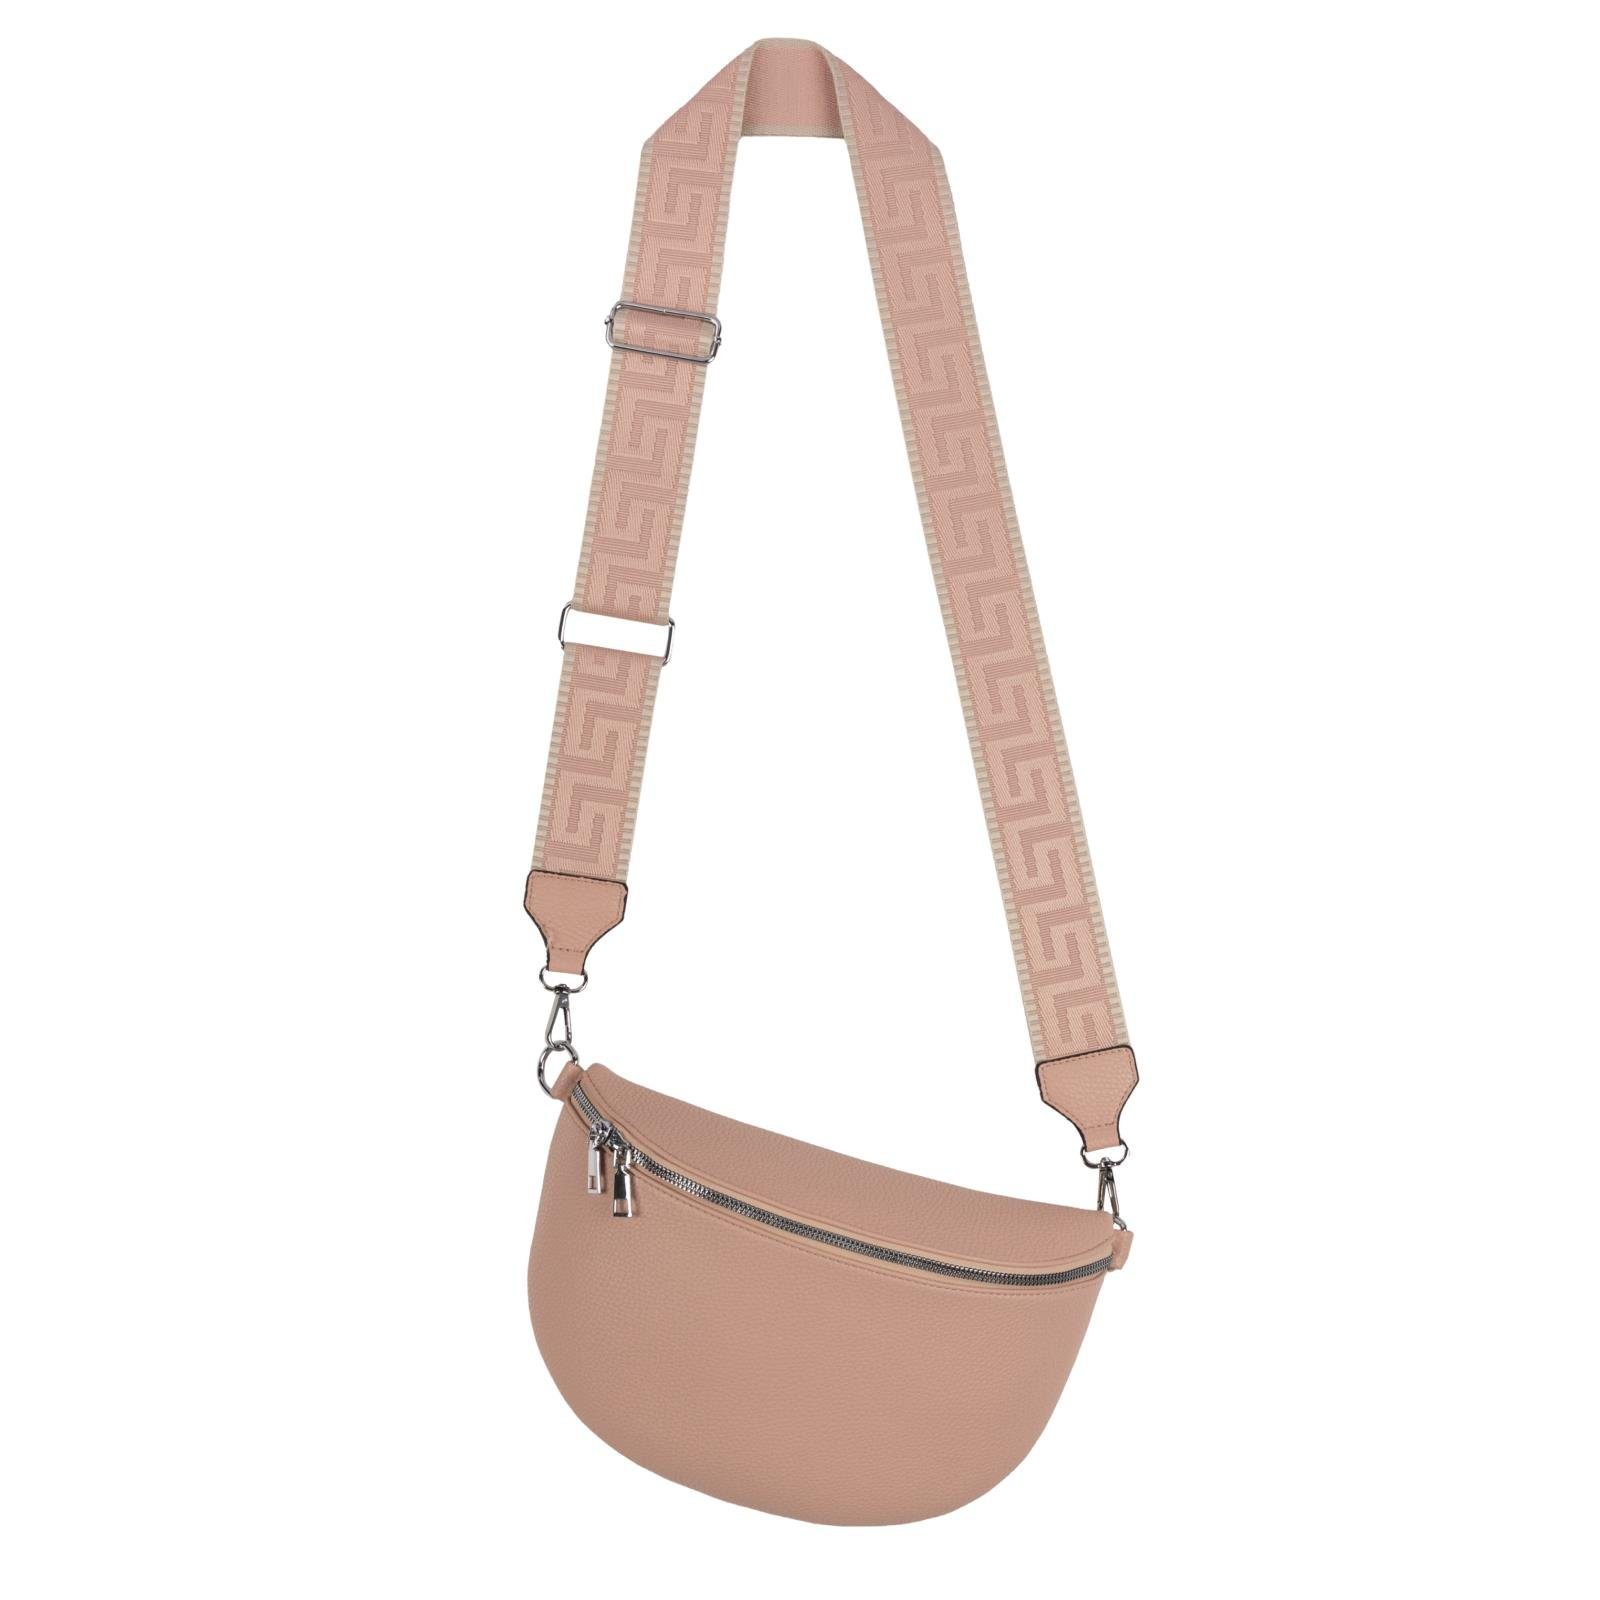 EAAKIE Gürteltasche Bauchtasche XL Umhängetasche Crossbody-Bag Hüfttasche Kunstleder Italy, als Schultertasche, CrossOver, Umhängetasche tragbar PINK